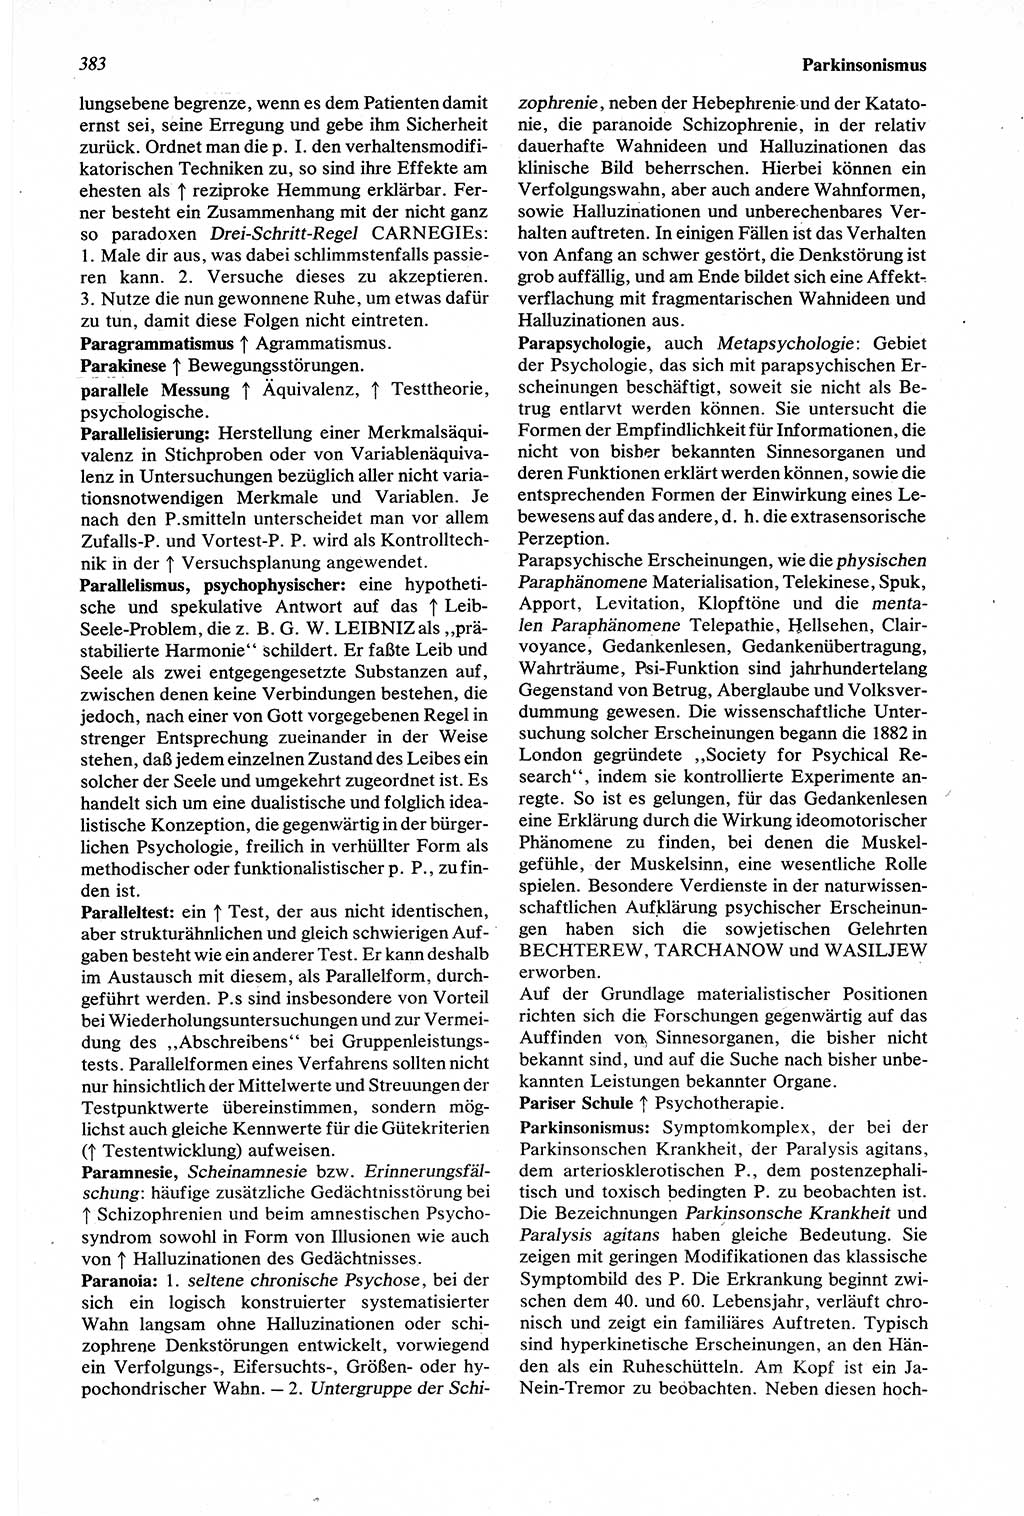 Wörterbuch der Psychologie [Deutsche Demokratische Republik (DDR)] 1976, Seite 383 (Wb. Psych. DDR 1976, S. 383)